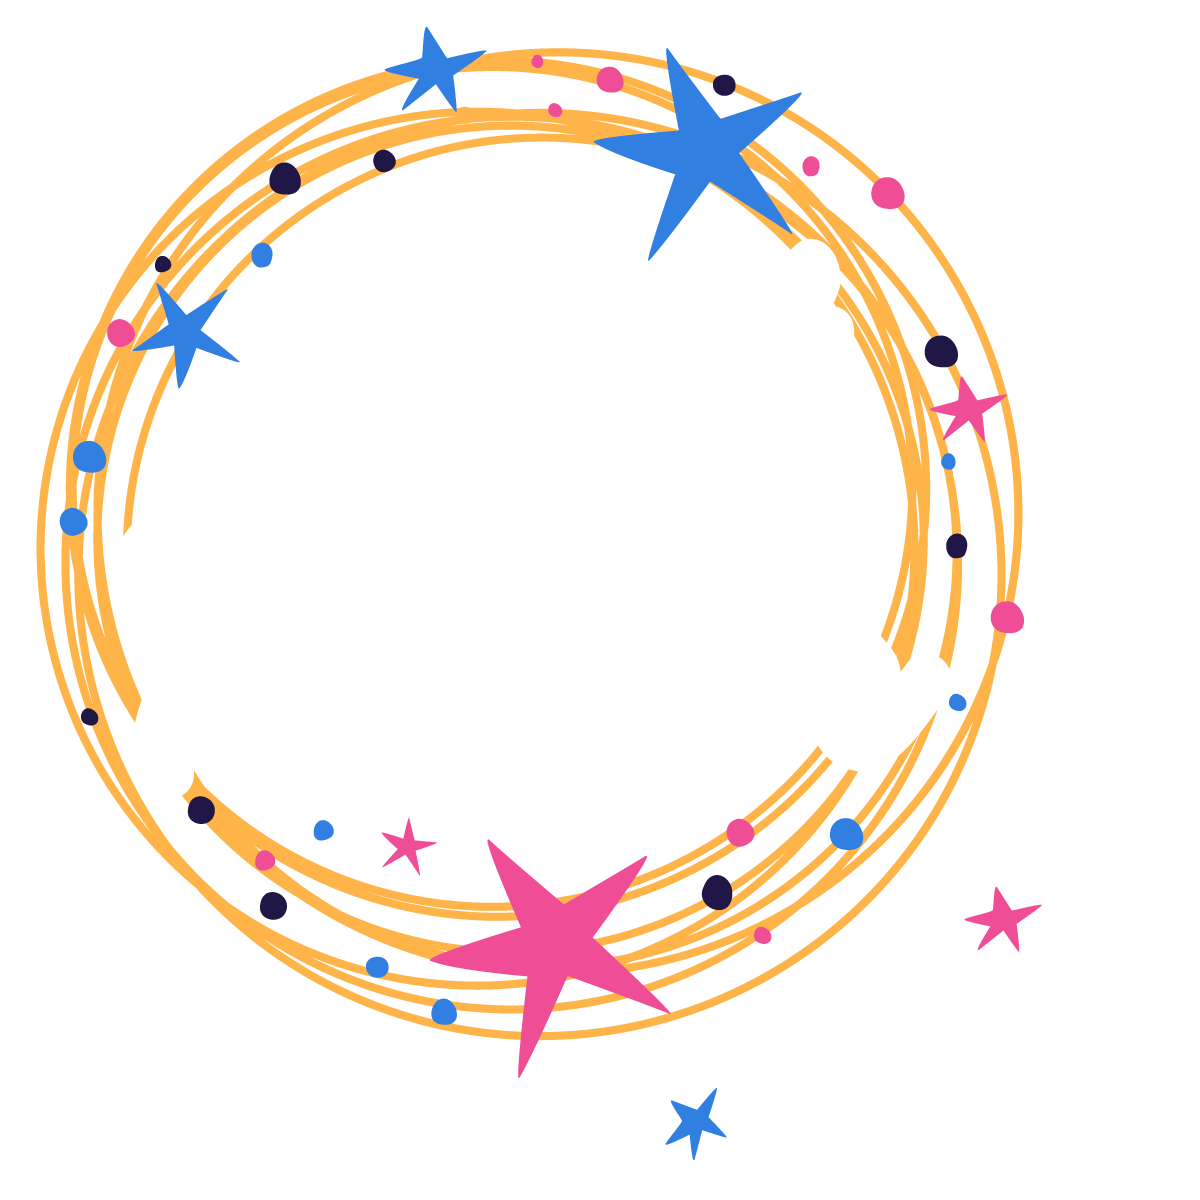 Matt Fletcher - Hosts DJs Decor